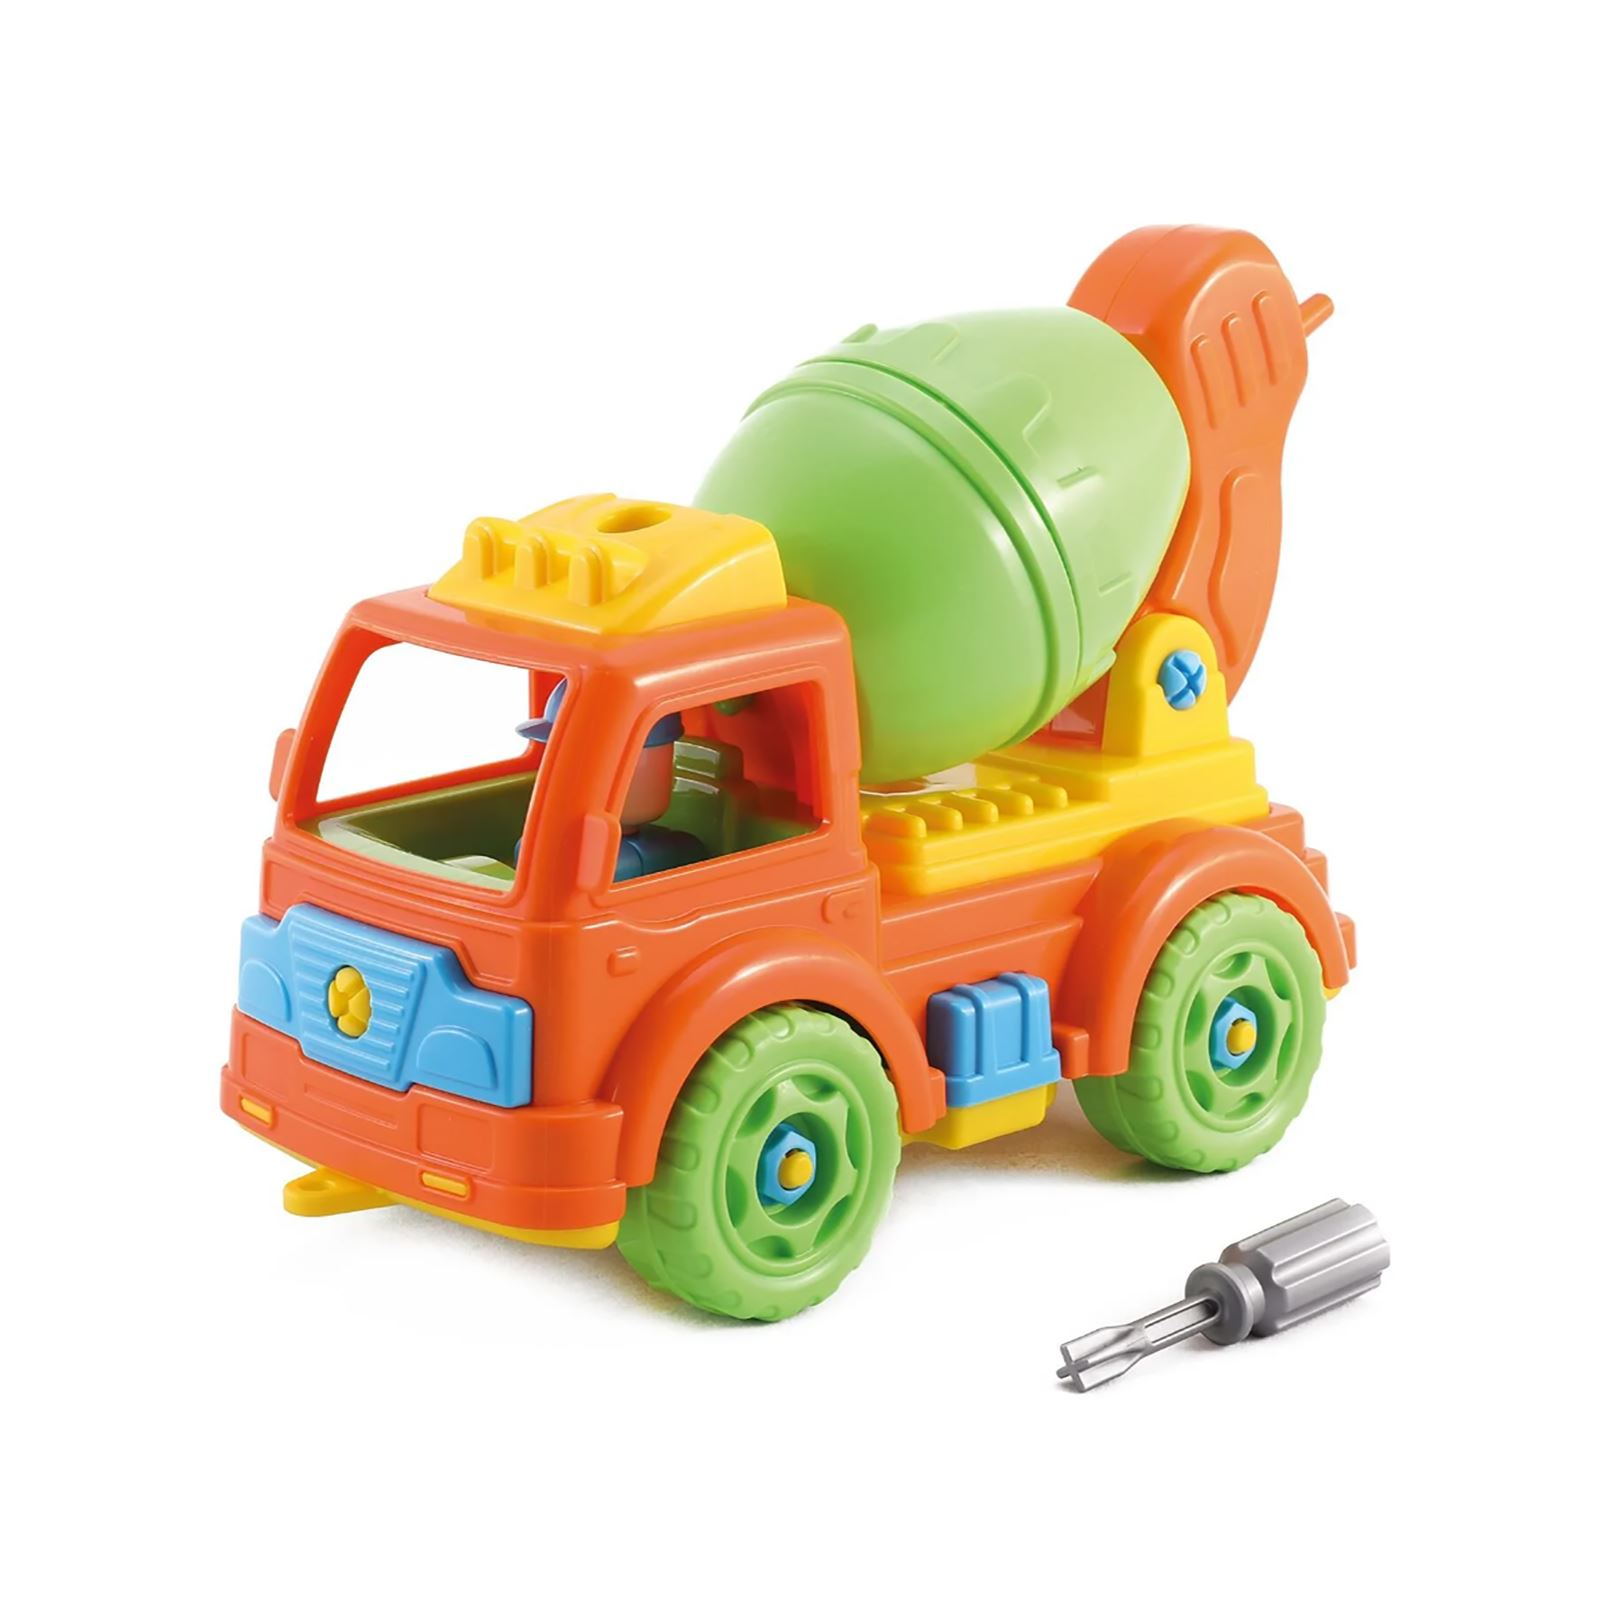 Oyuncak Araba ve Araçlar Sürtmeli Oyuncaklar Turuncu-Yeşil